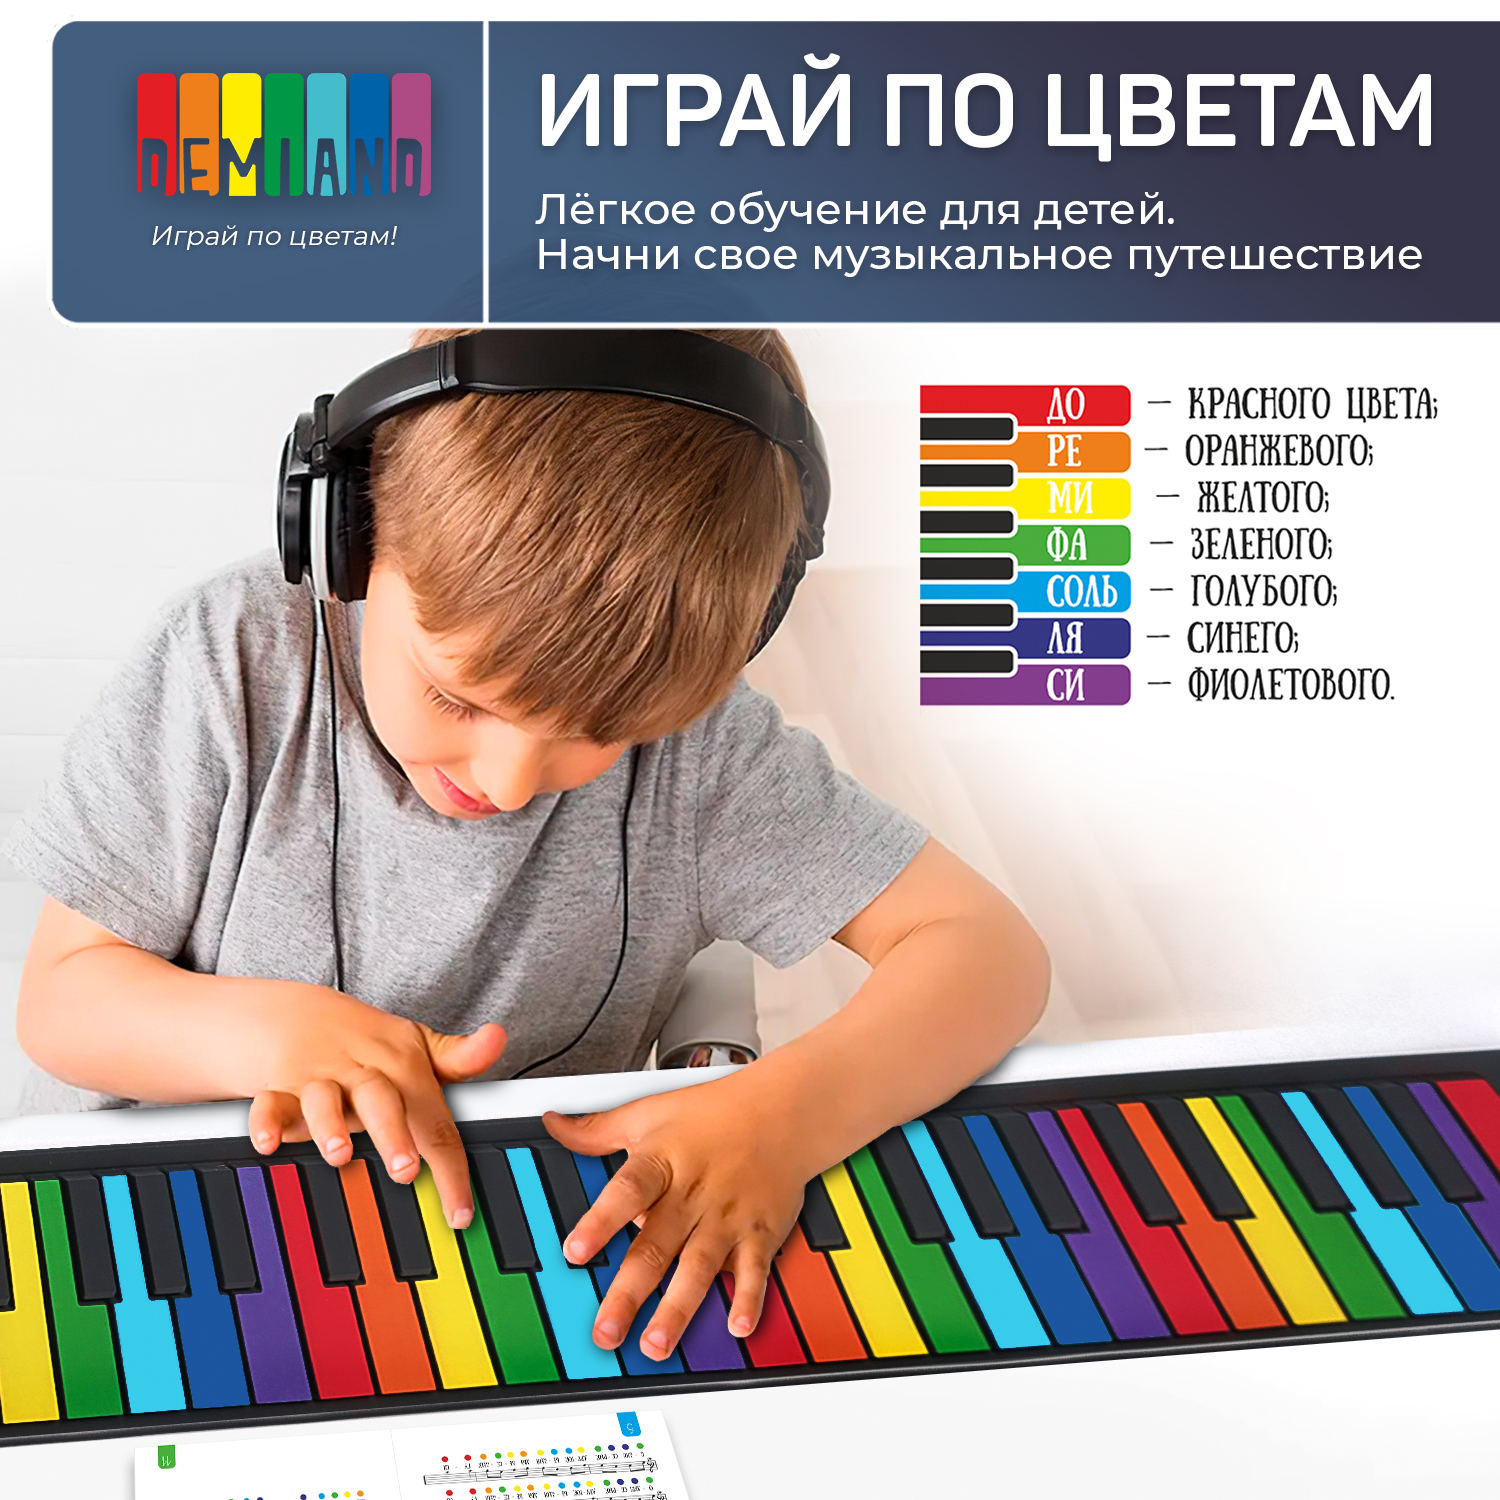 Детское гибкое пианино DEMIAND 49 клавиш нотная книга - фото 6